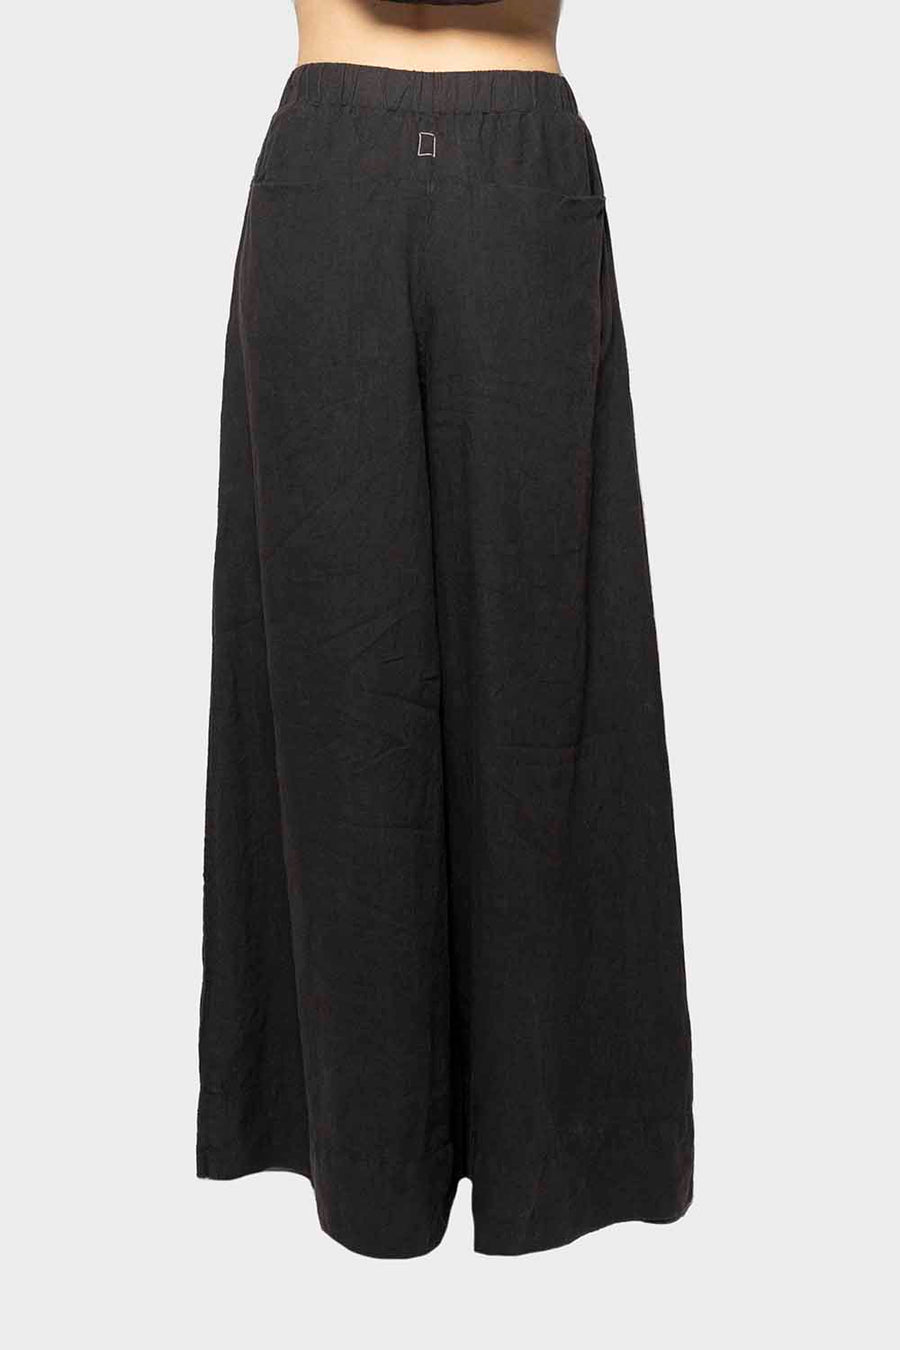 Pantalone Isabella Clementini in lino nero i1324